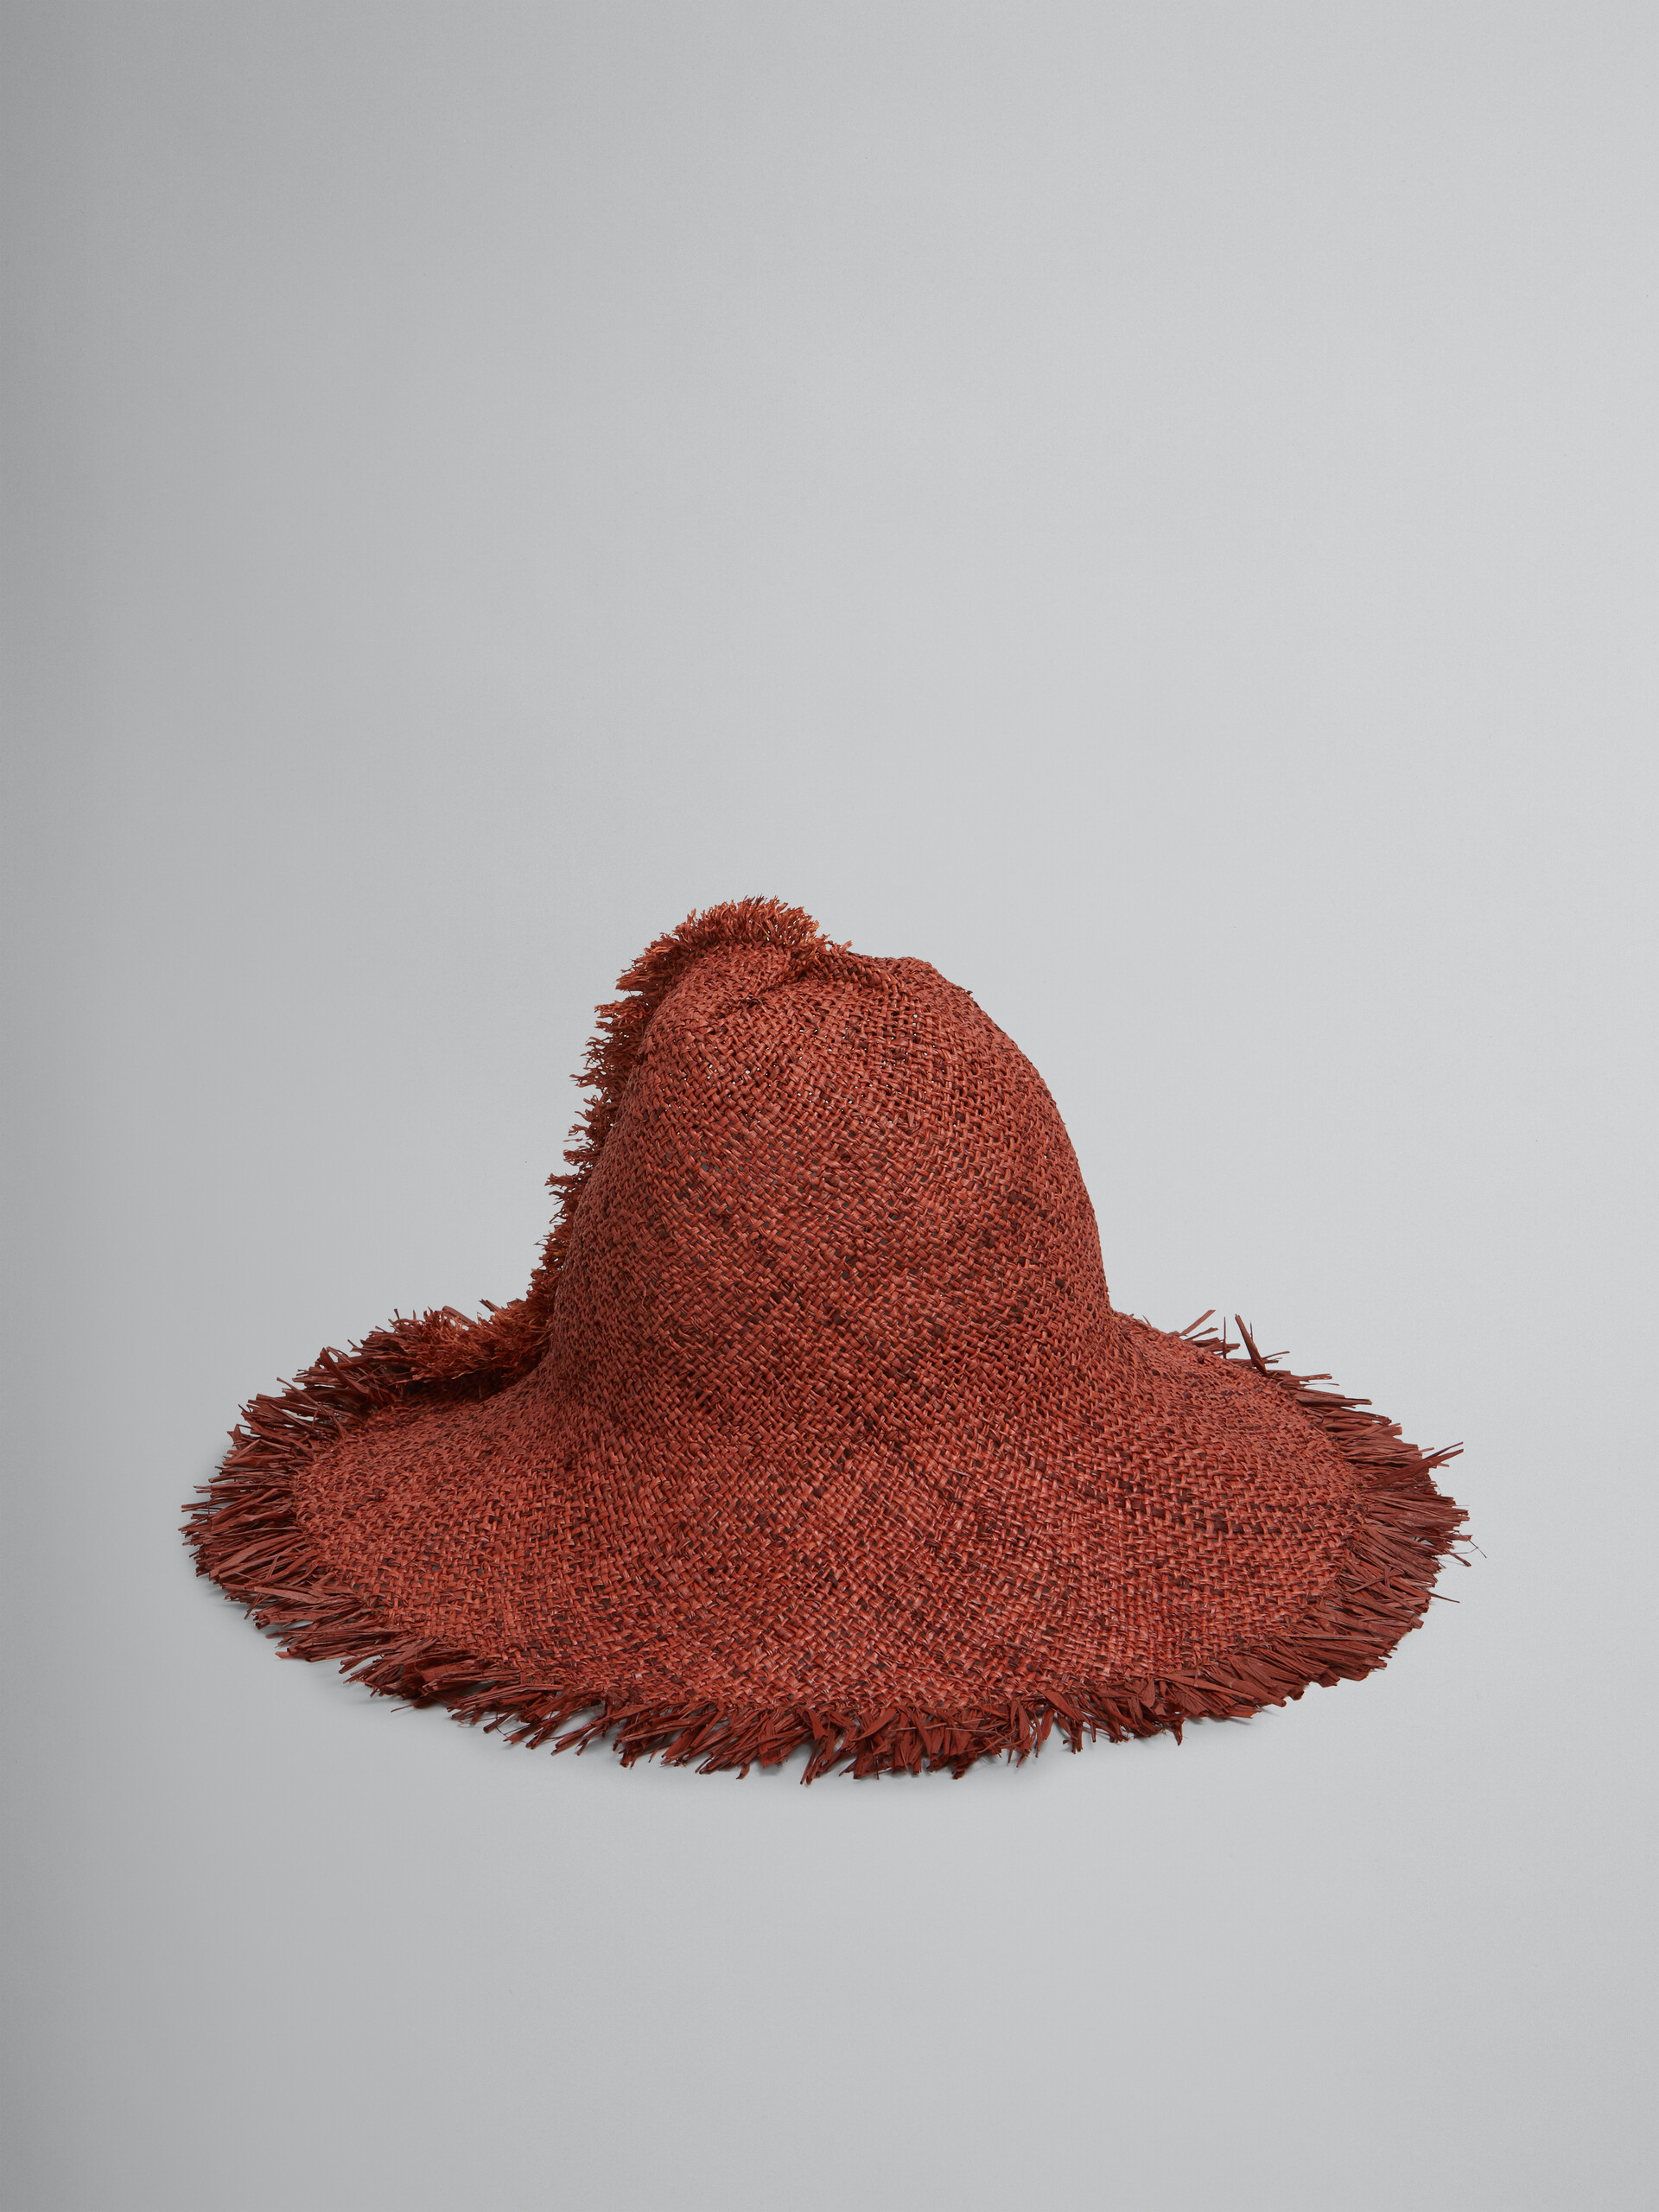 Cappello in rafia marrone con bordo sfrangiato - Cappelli - Image 1